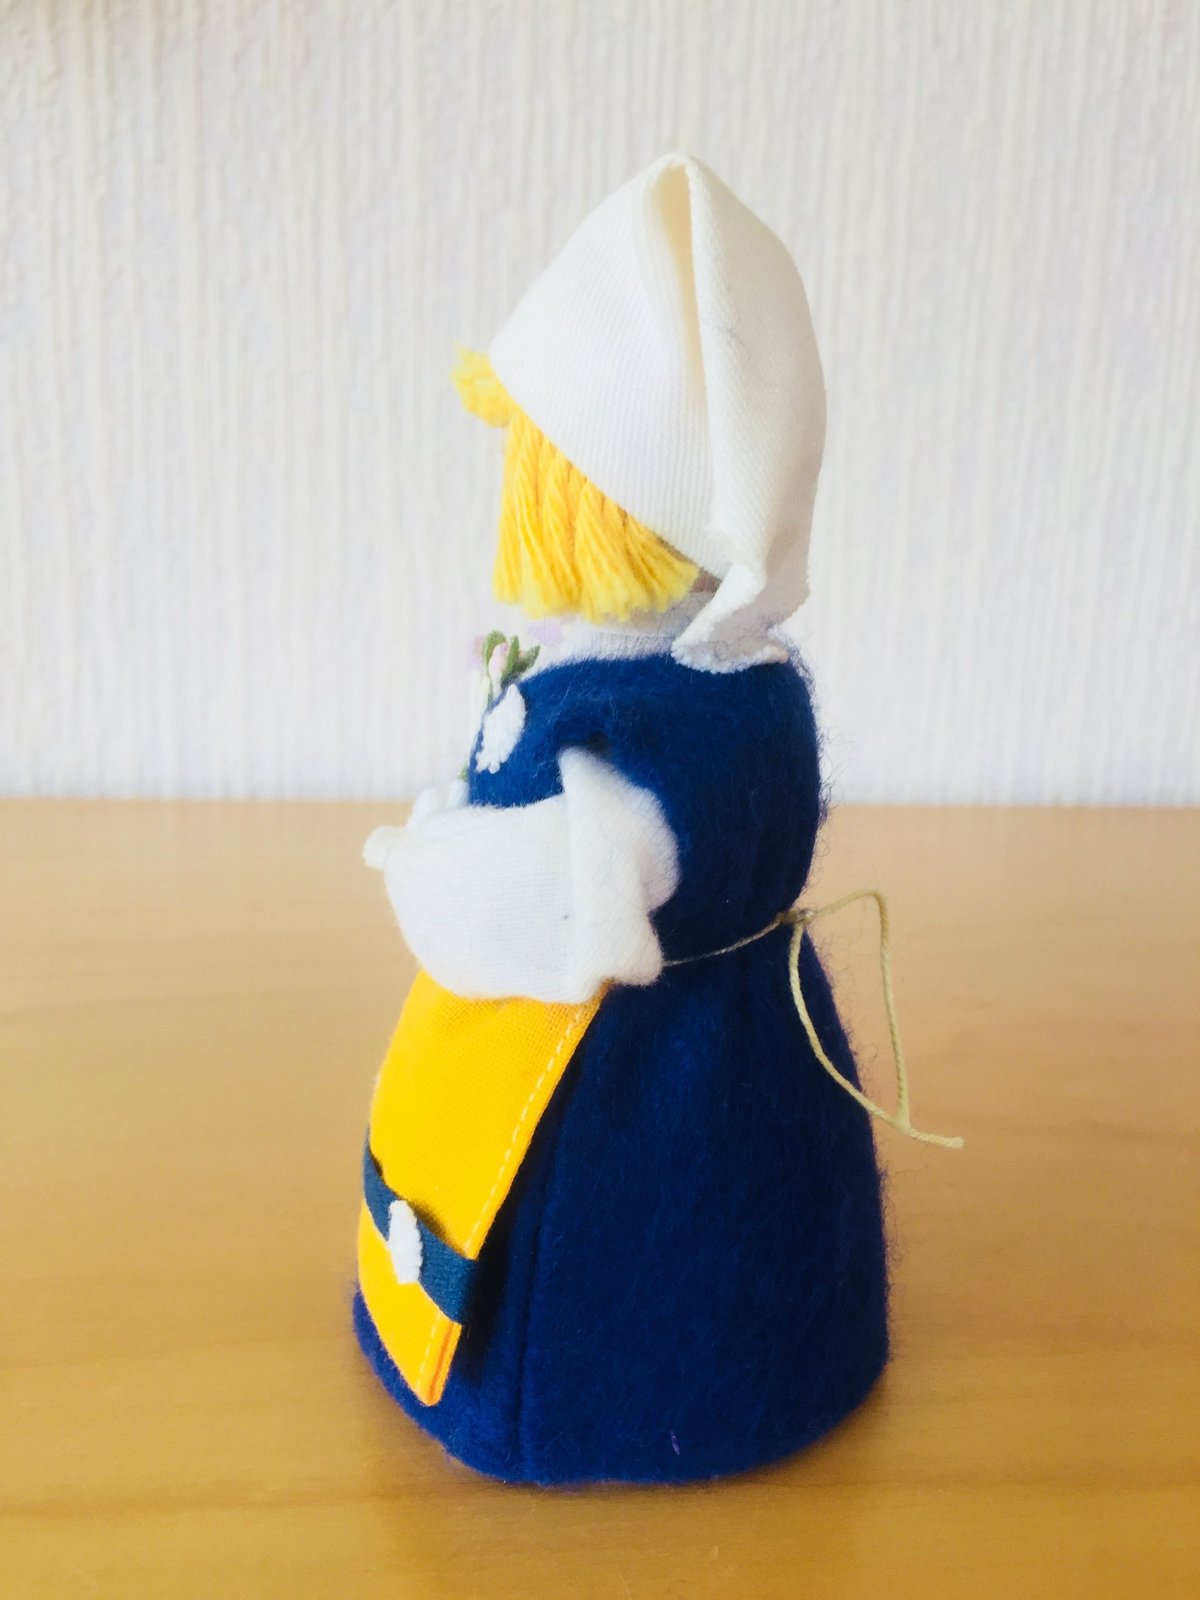 Hemslöjd/スウェーデンの民族衣装を着た女の子/木製ハンドメイド人形